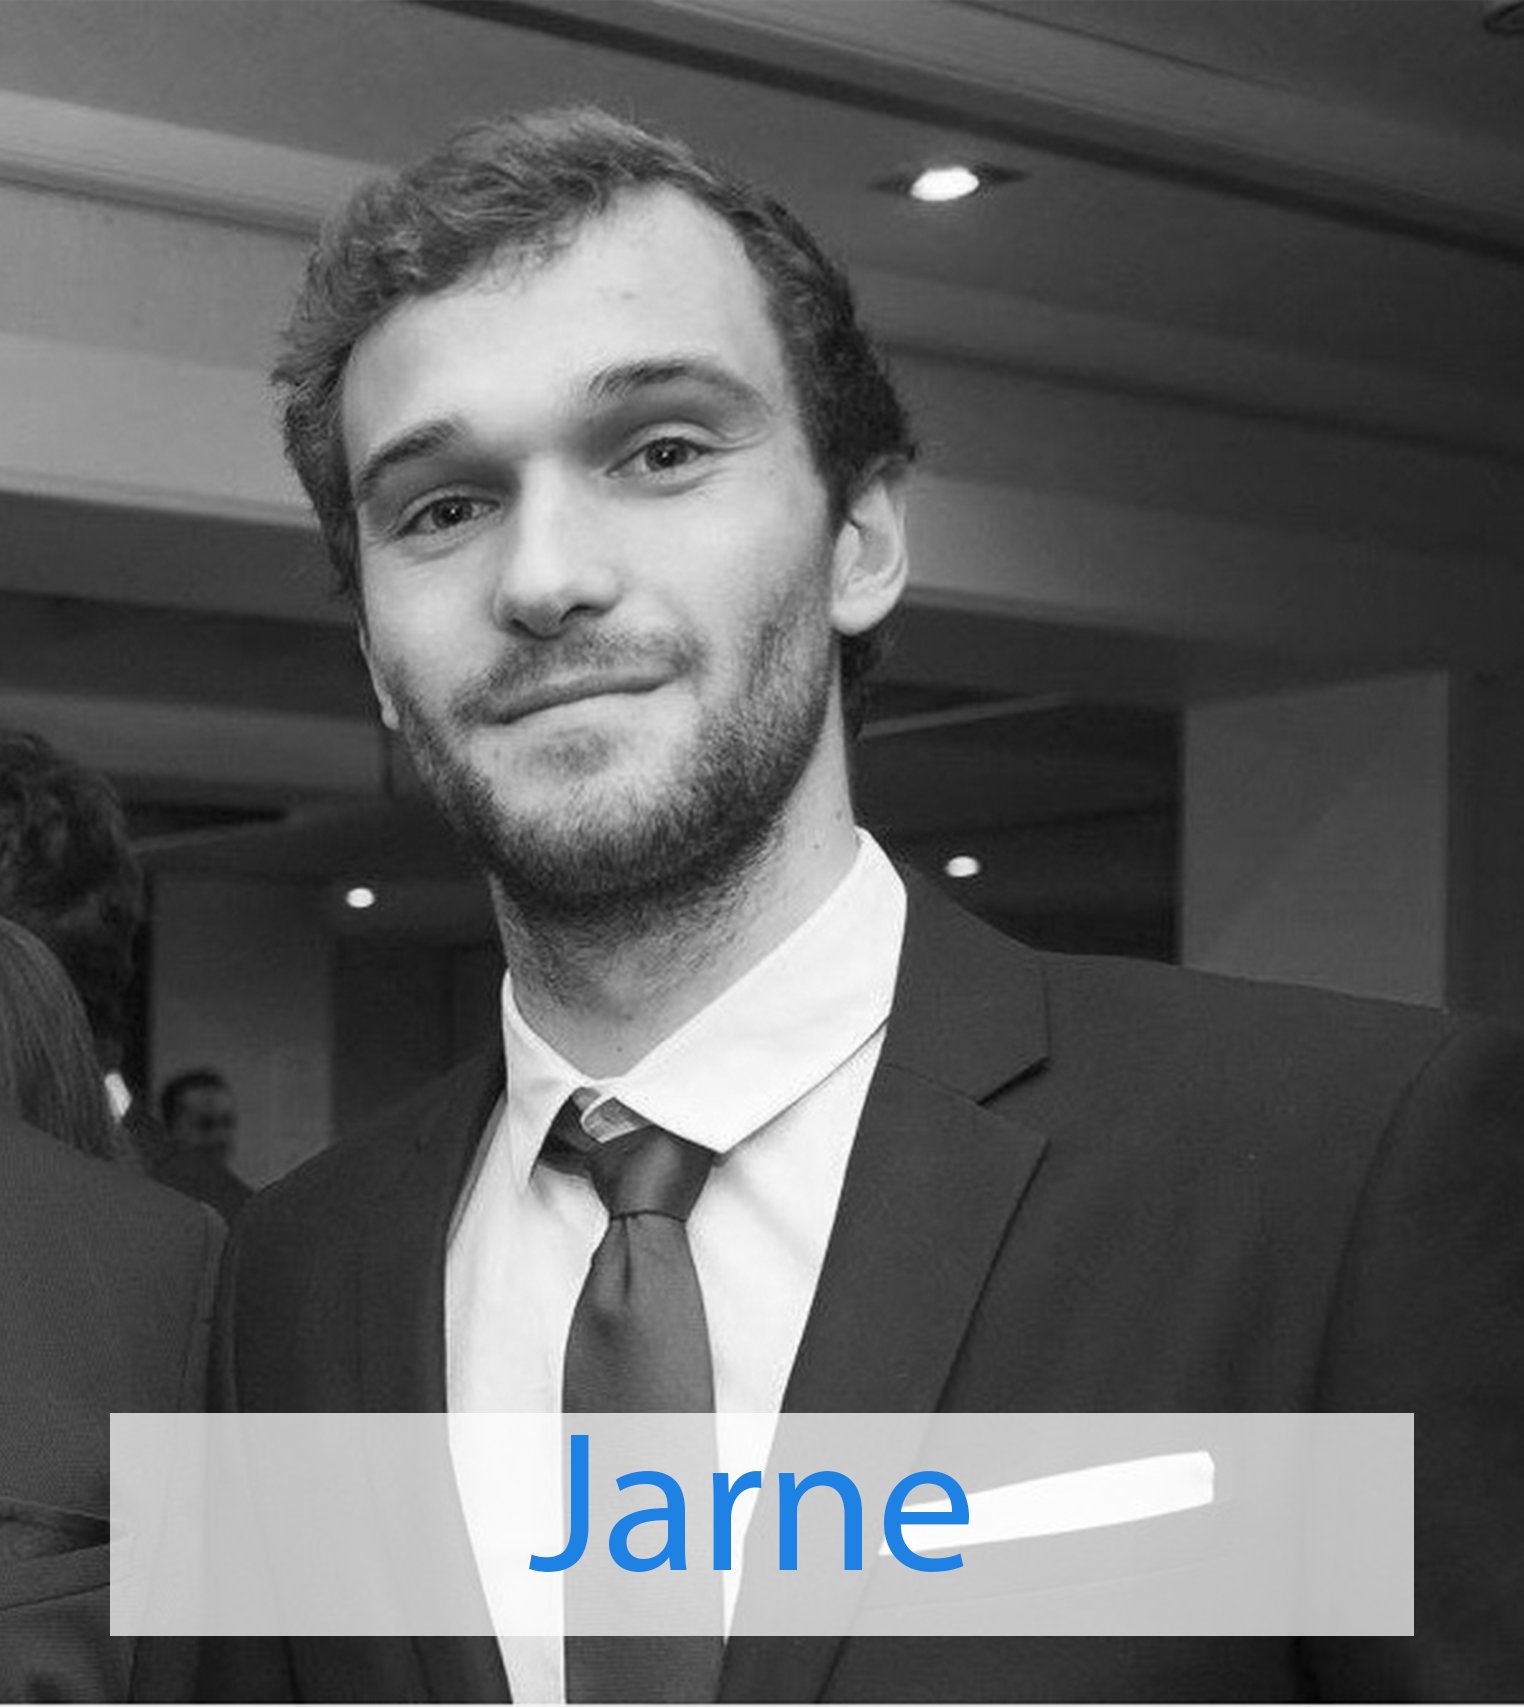 Meet me Jarne